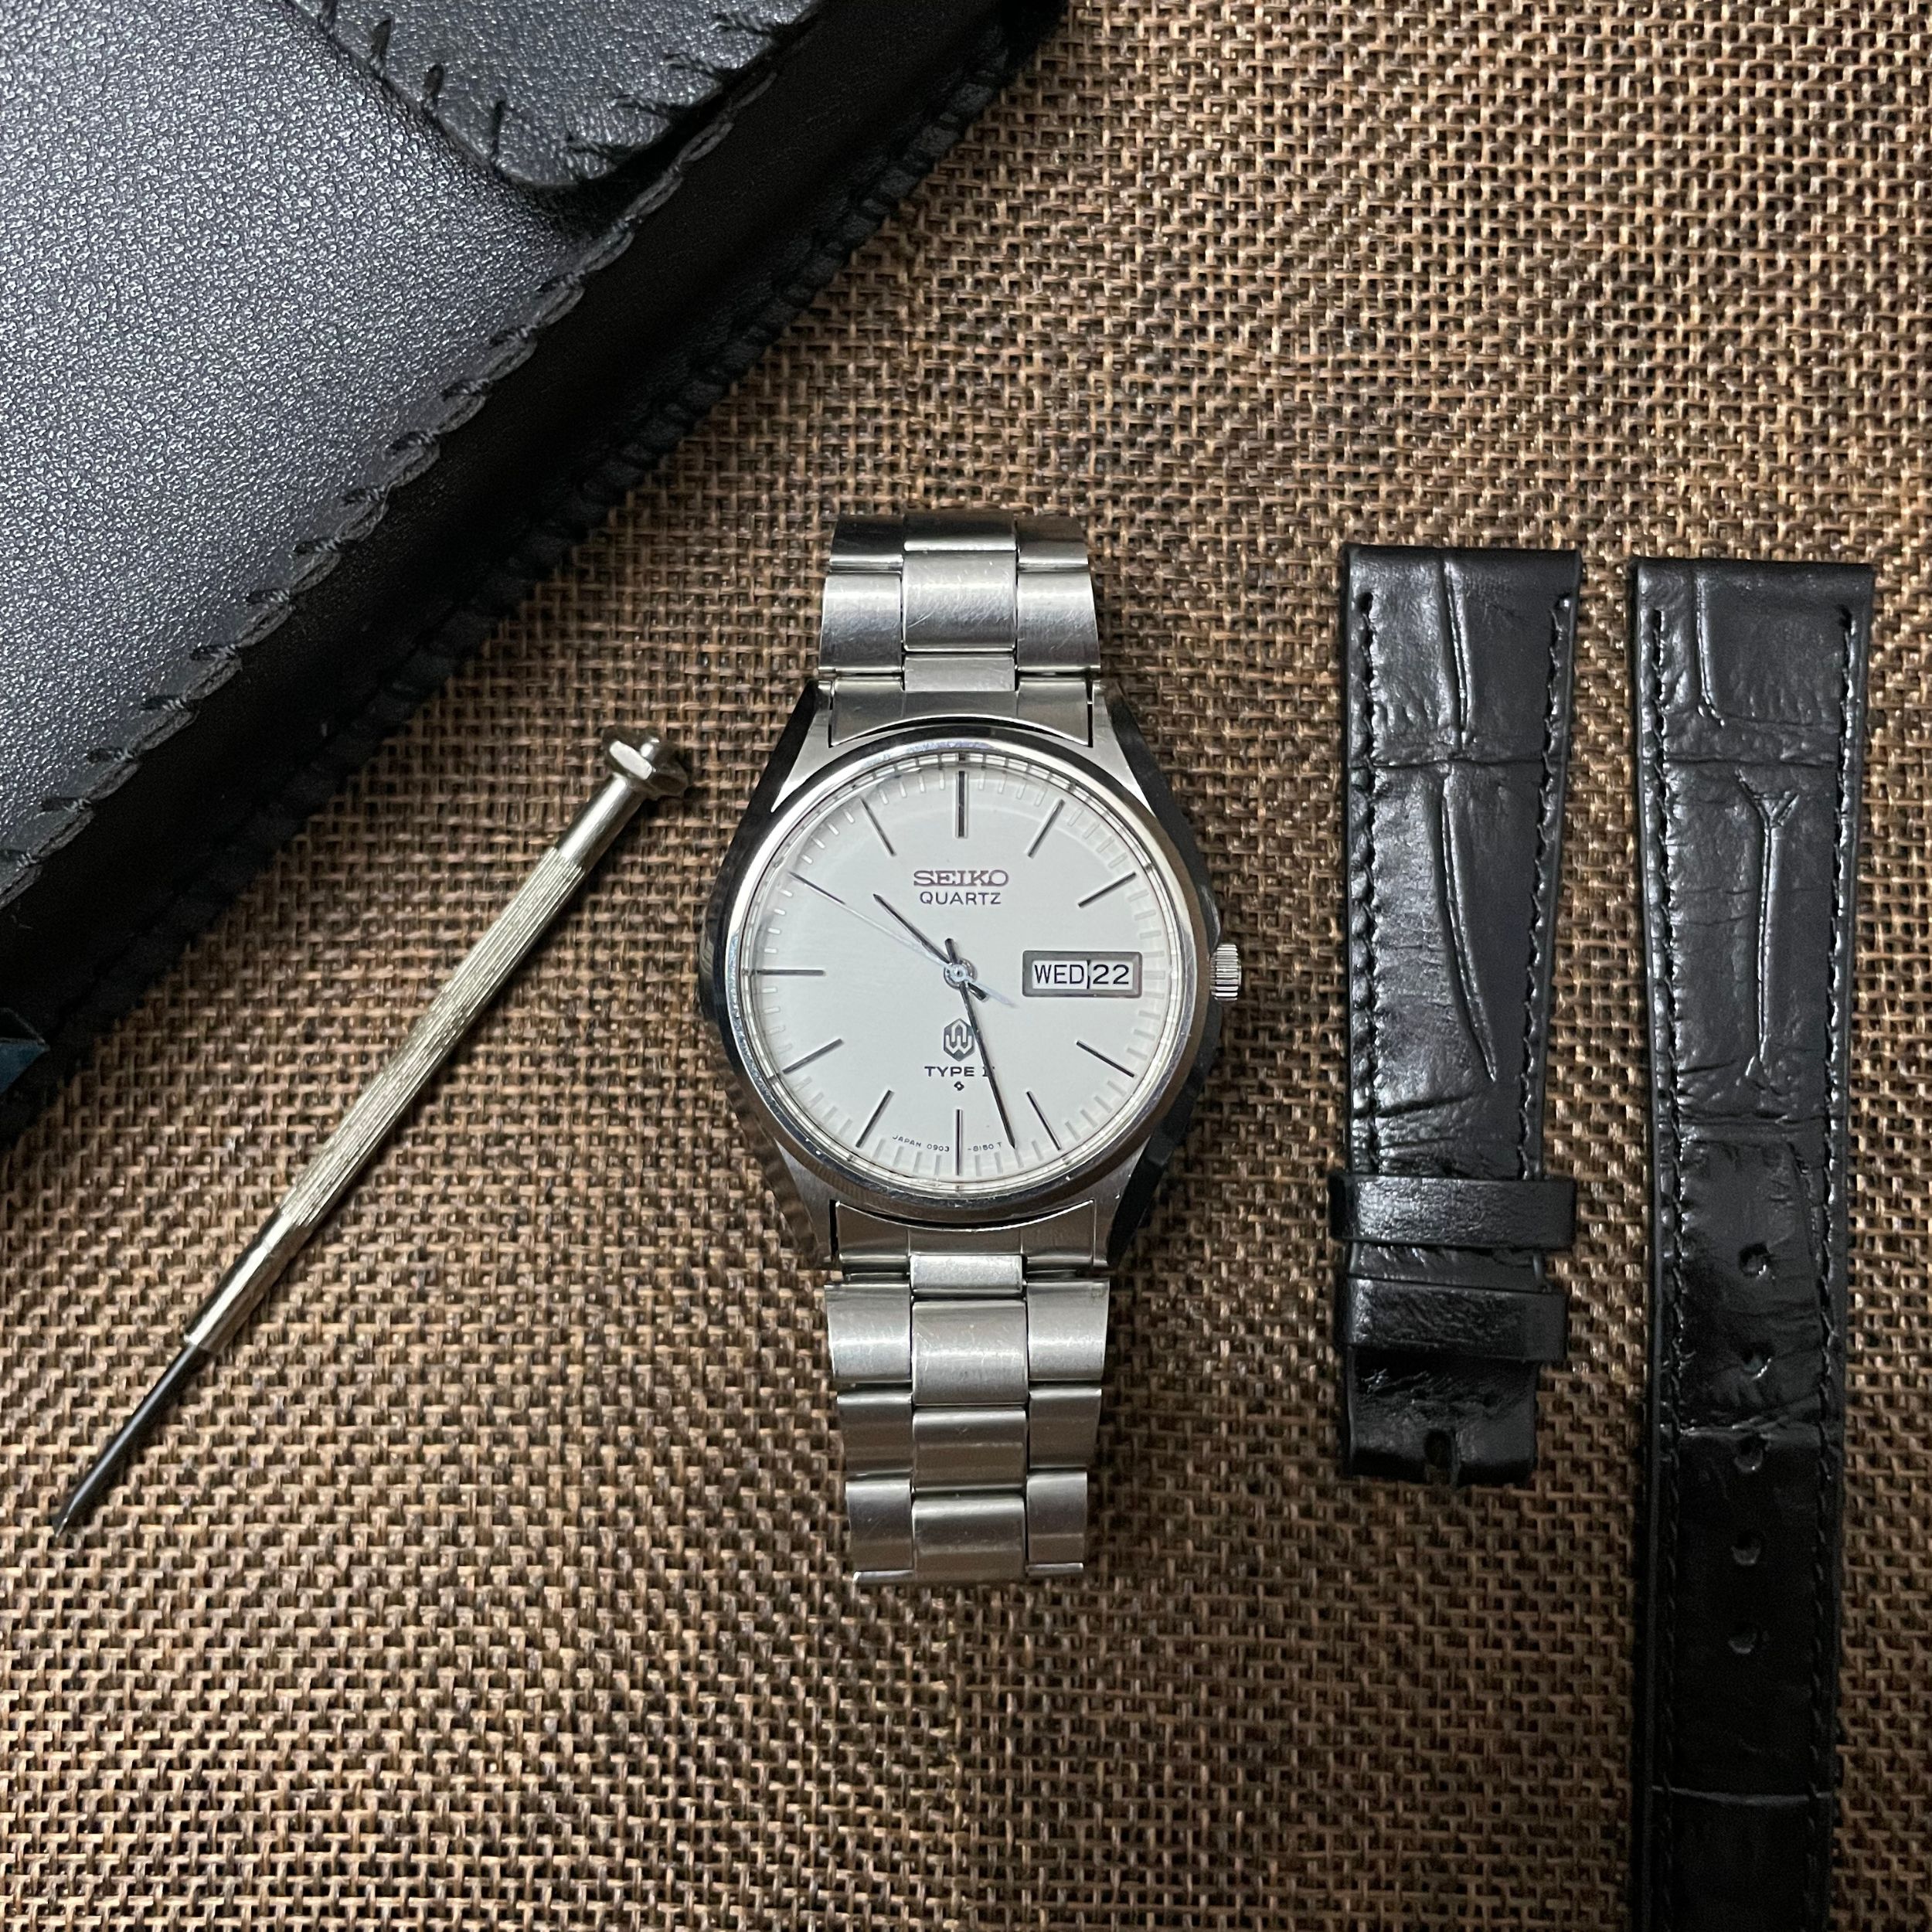 Đồng hồ Seiko Quartz Type II 711414 chính hãng (2hand) - Đồng hồ Vintage -  Shop đồng hồ cũ, địa chỉ chuyên cung cấp các loại đồng hồ cổ, đồng hồ  vintage,